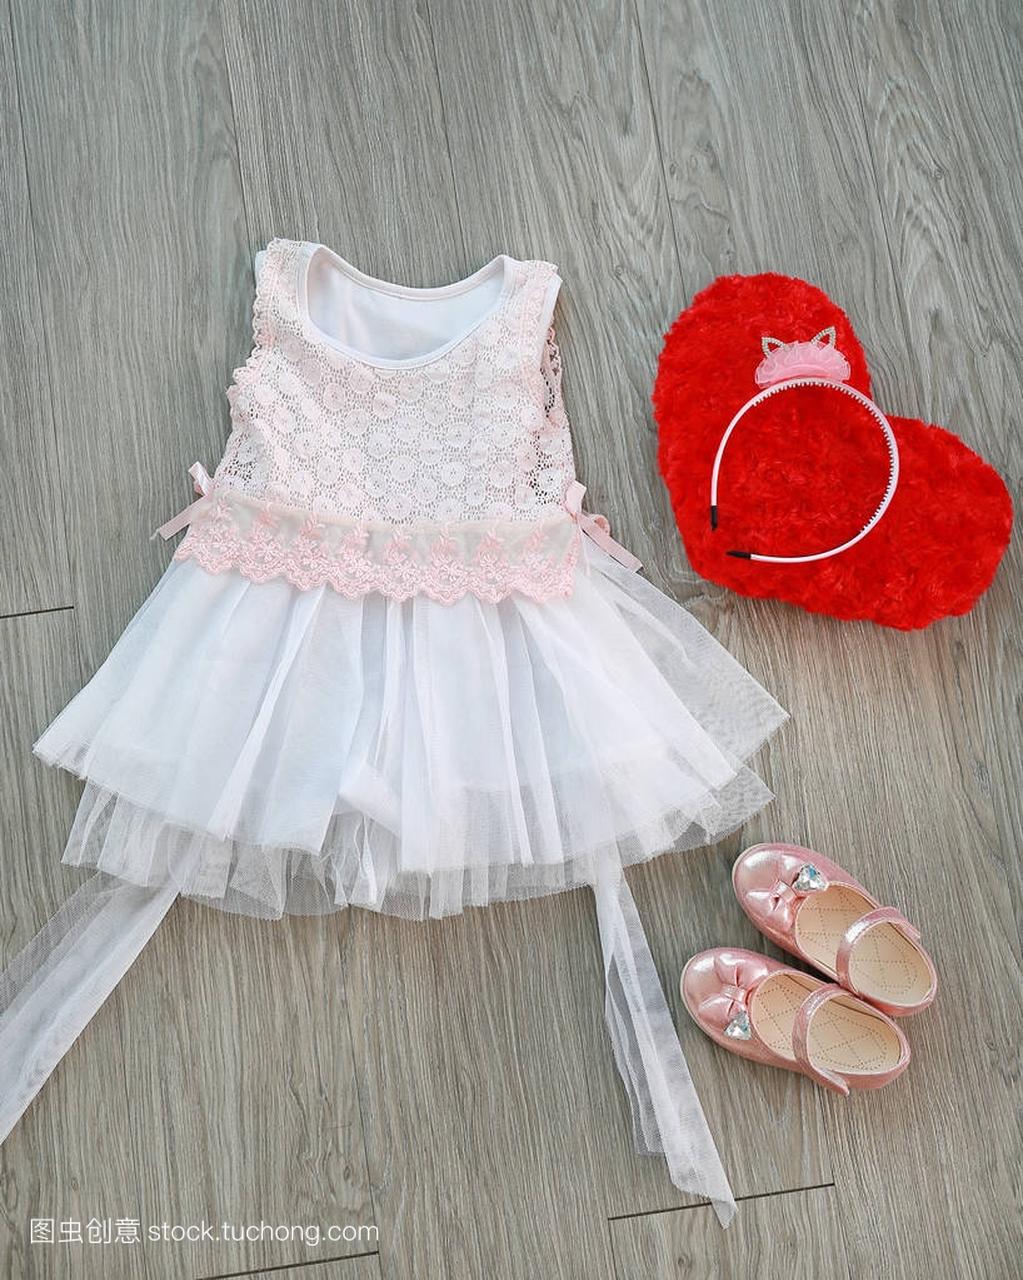 粉红色的白色蕾丝连衣裙与女孩的小鞋子和红色